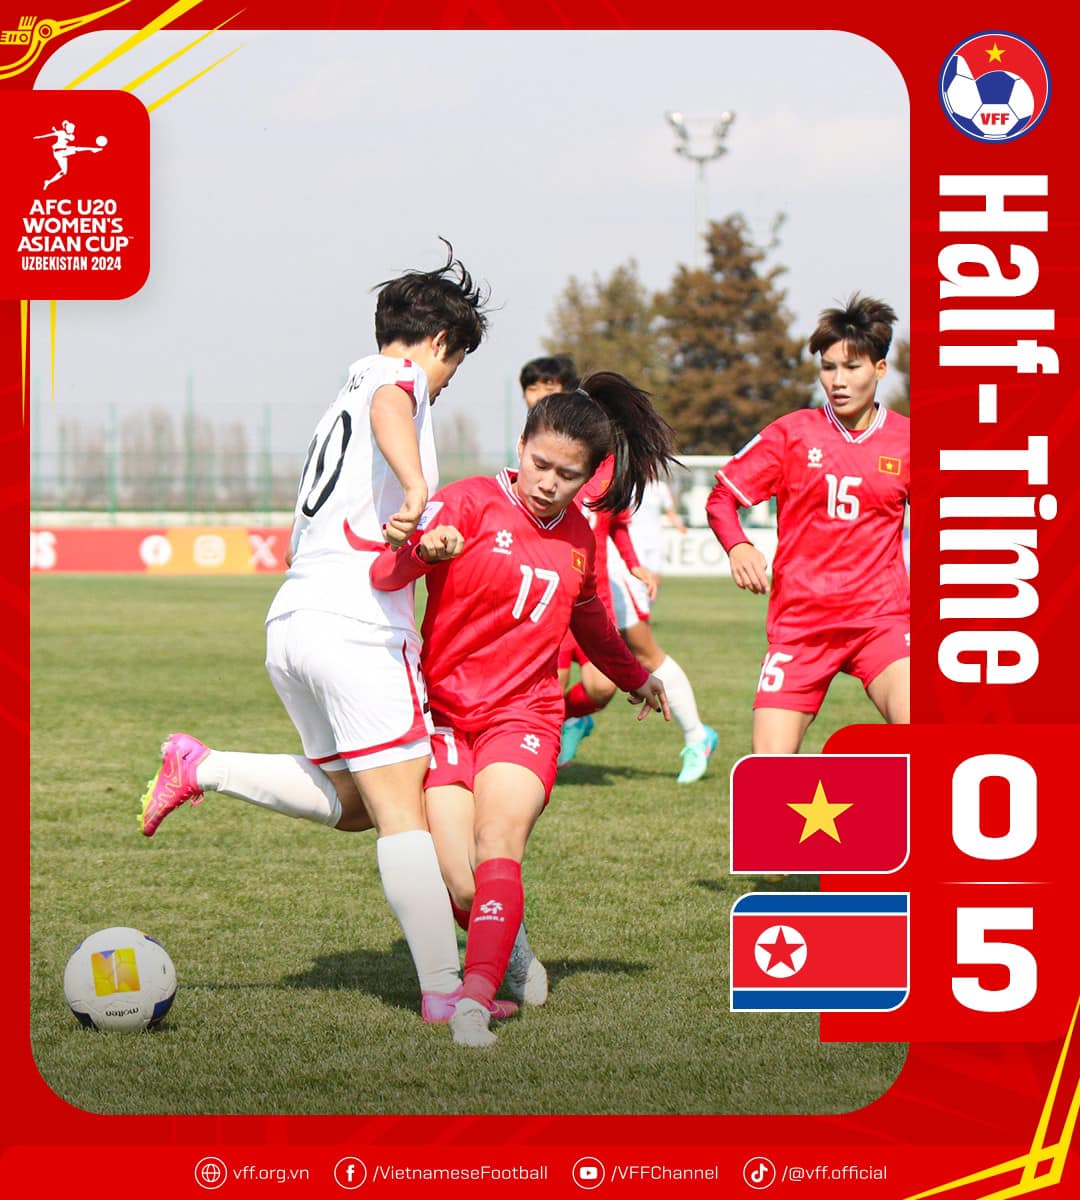 Tuyển U20 nữ Việt Nam bị tuyển U20 nữ CHDCND Triều Tiên dẫn 0-5 trong hiệp 1. Ảnh: VFF